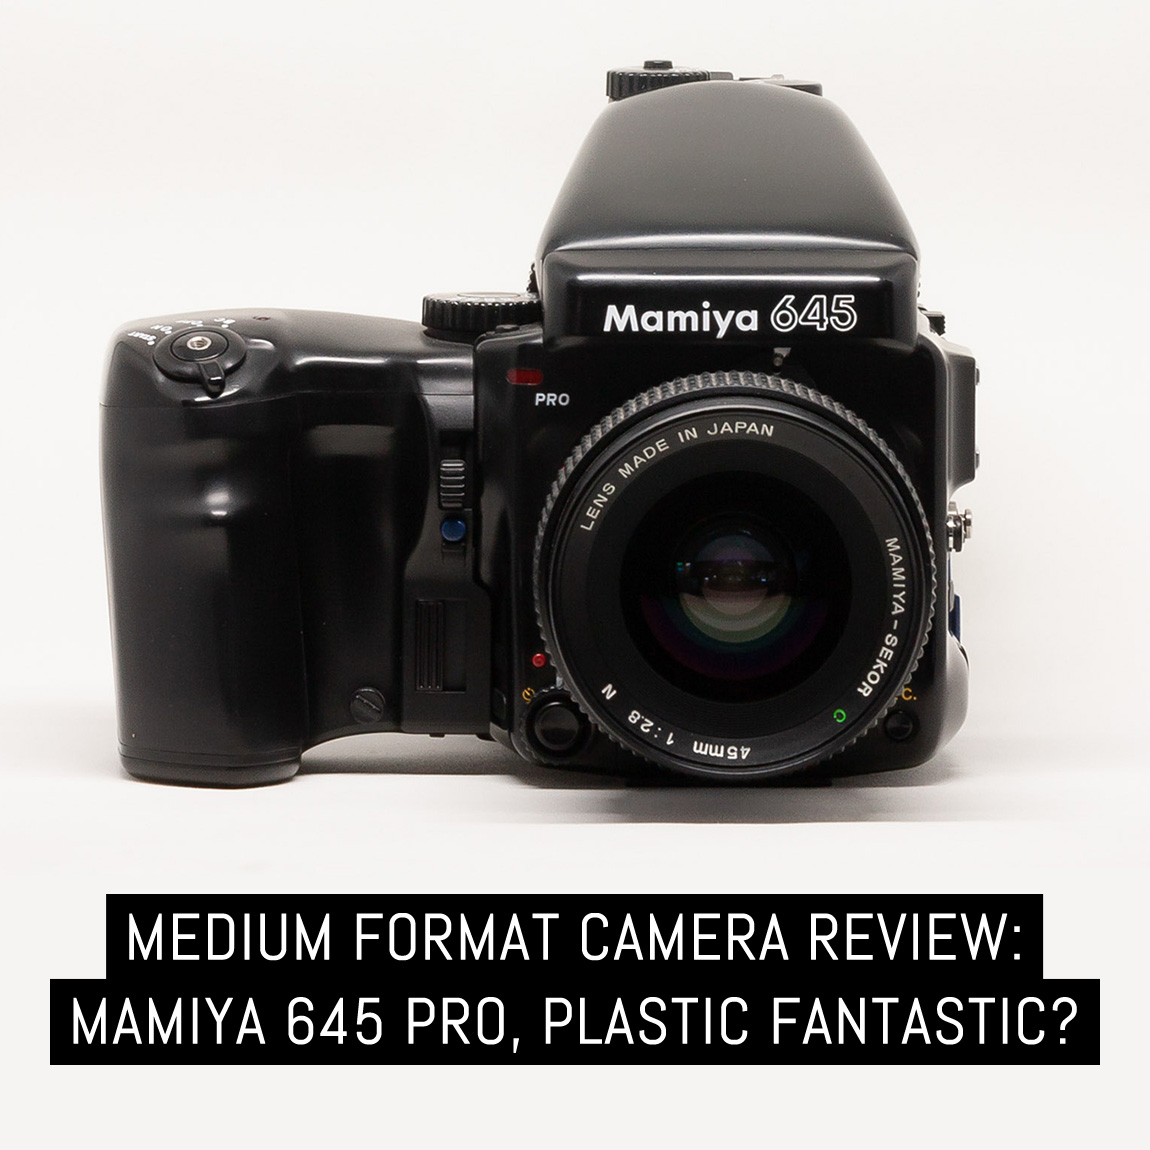 Camera Review: Mamiya 645 Pro, plastic fantastic? – Kikie Wilkins